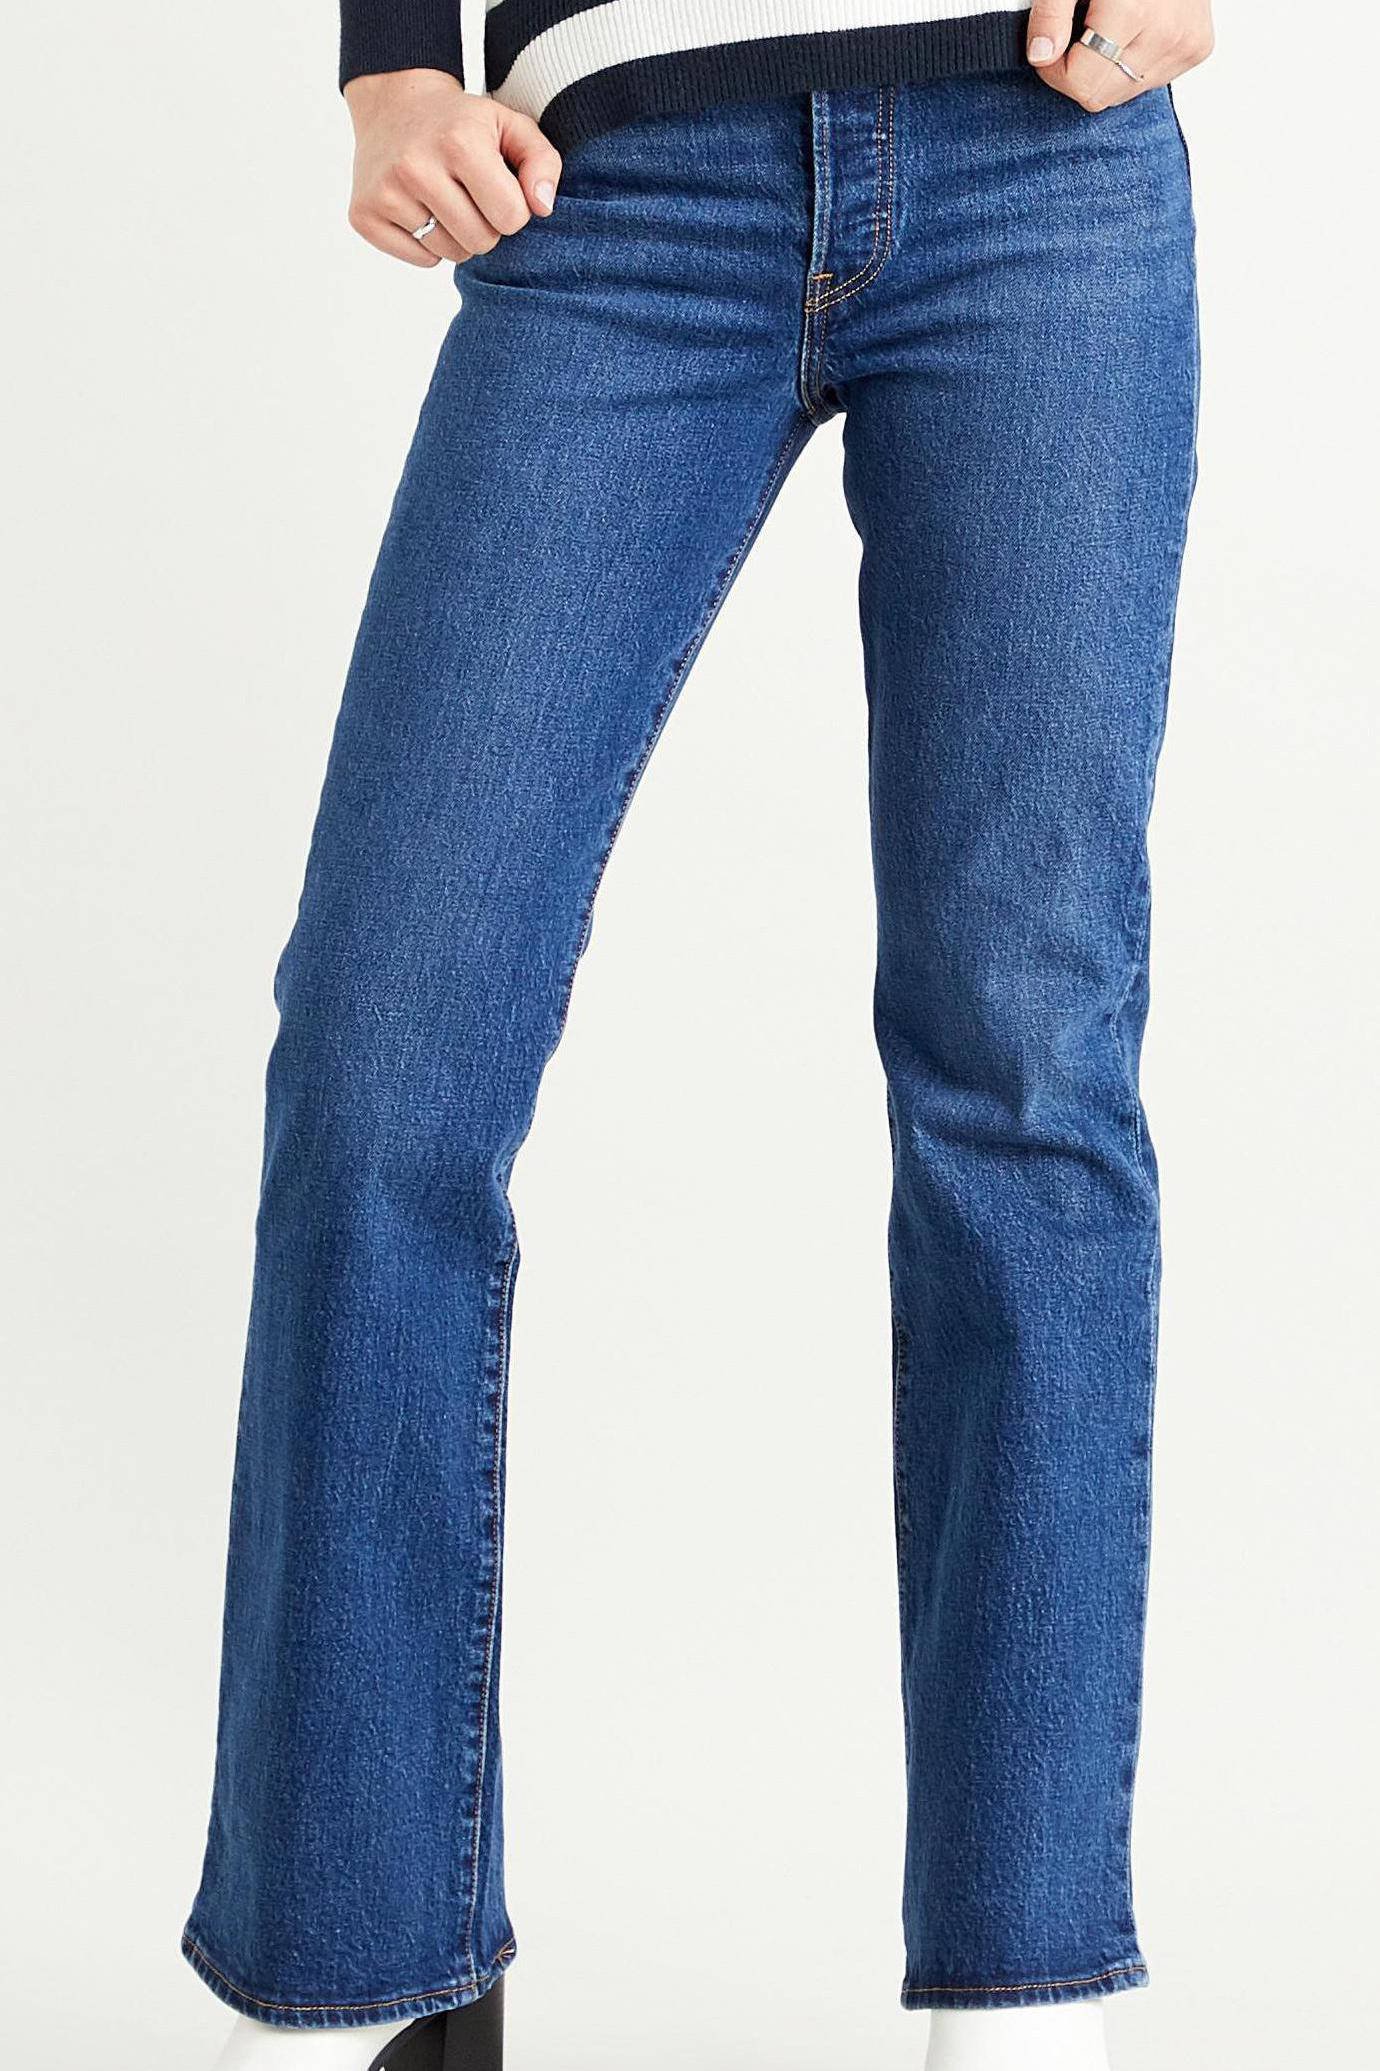 levis jeans ribcage